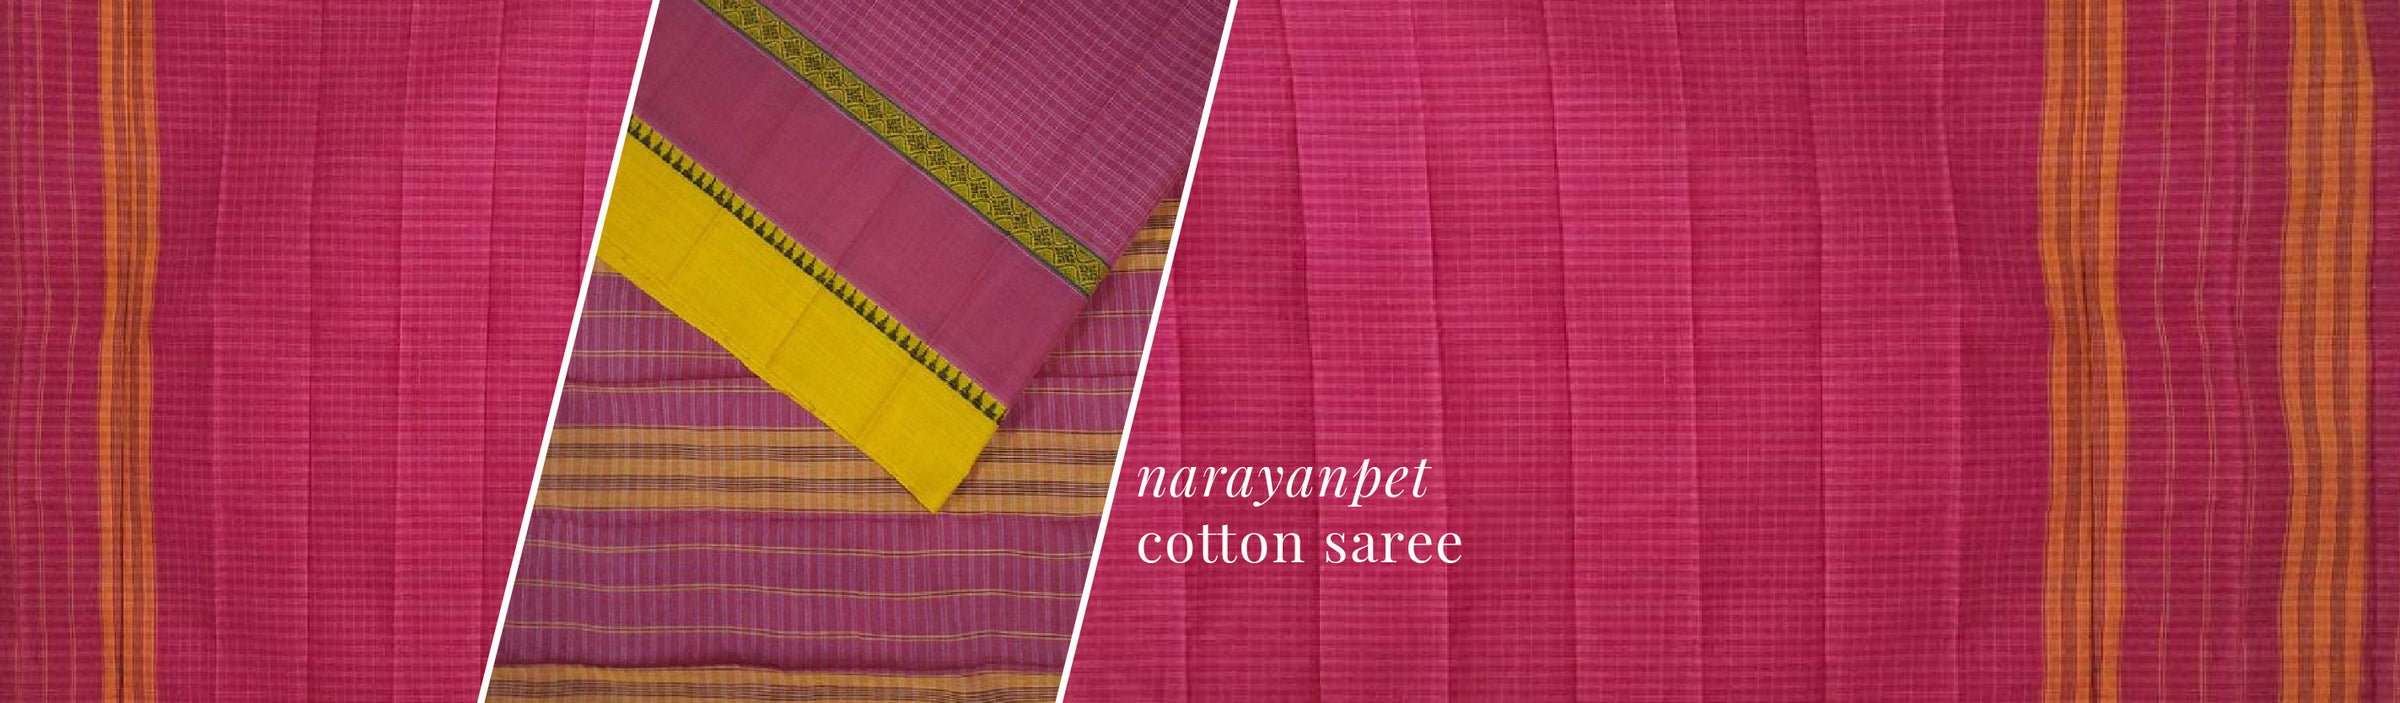 Narayanpet Cotton Sarees